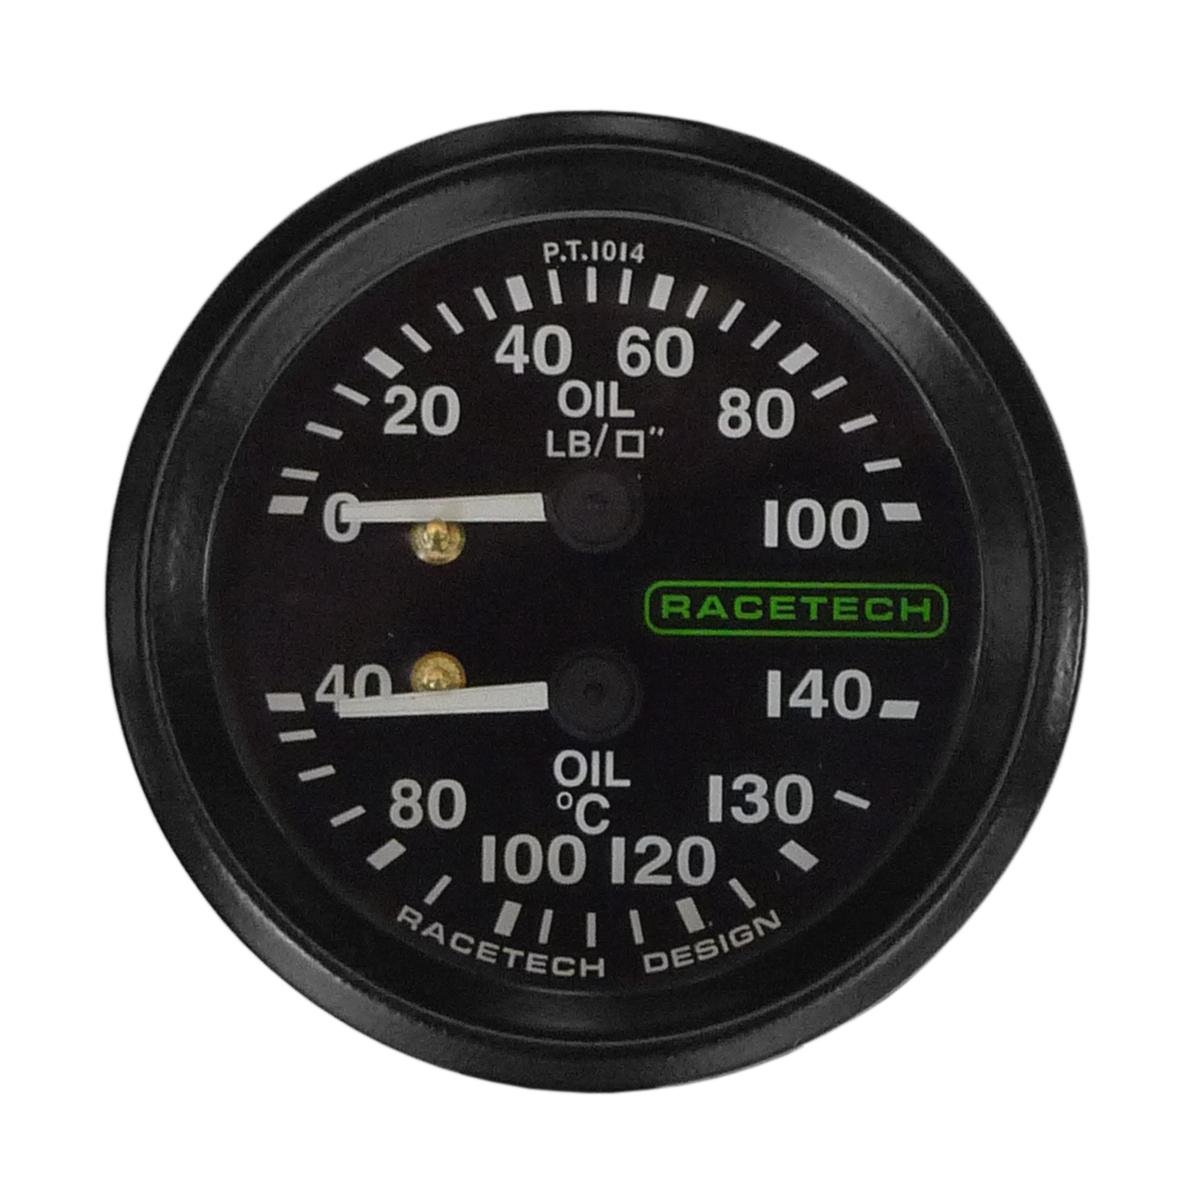 temperature and pressure gauge